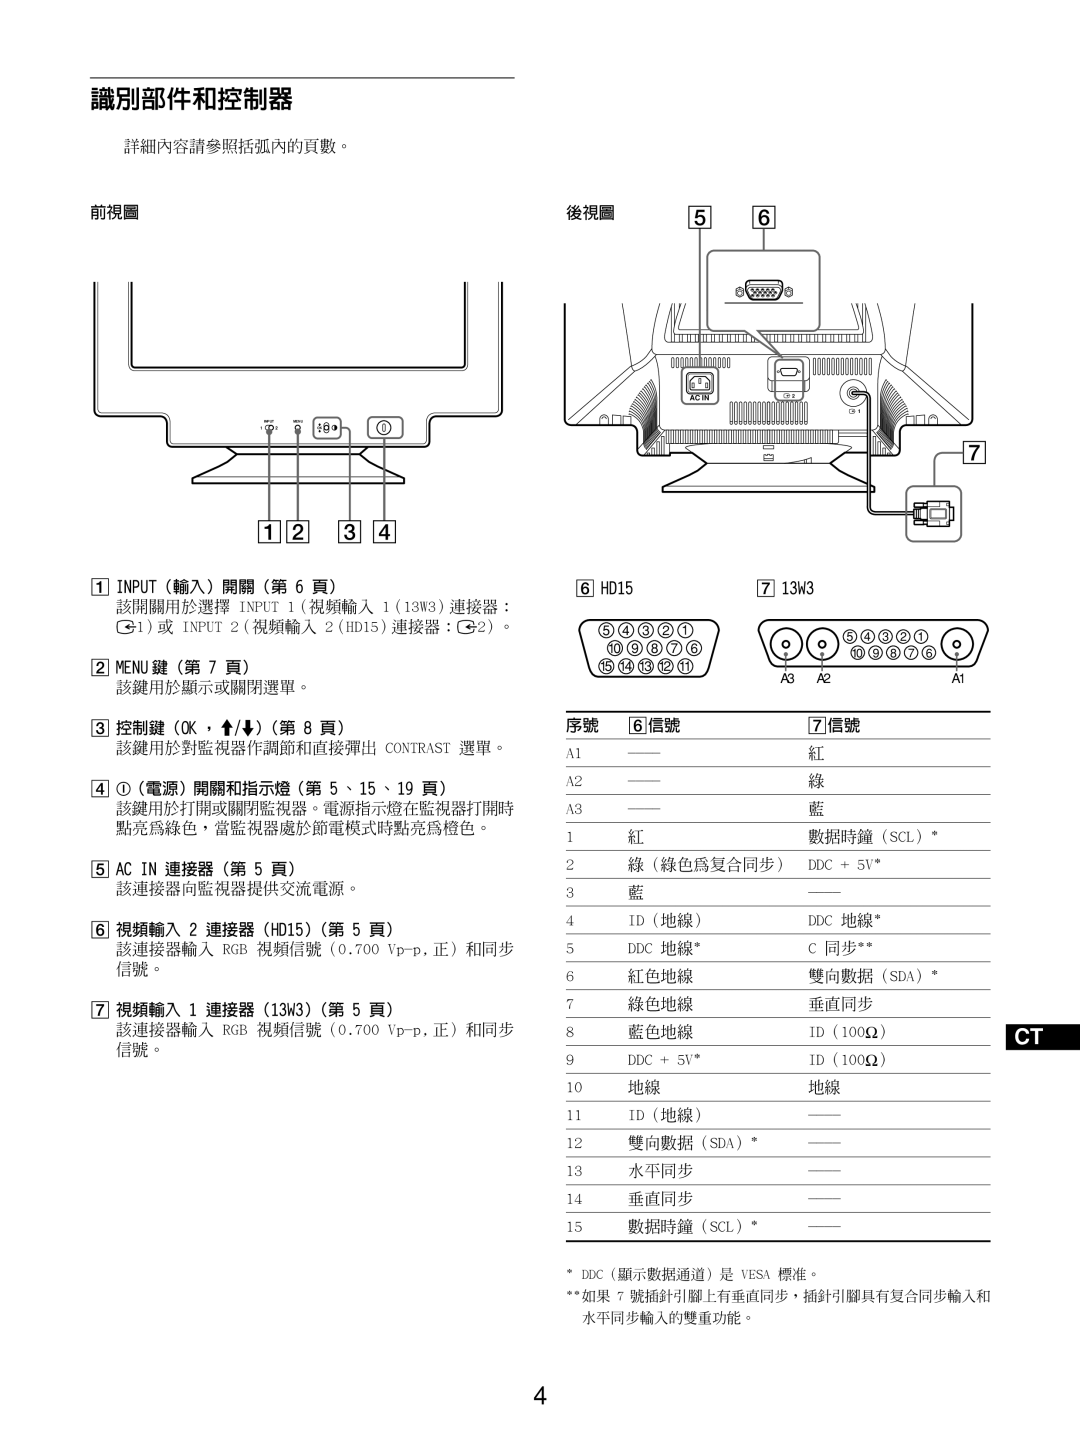 Sony GDM-5510 識別部件和控制器, 12 3, 後視圖 5, INPUT（輸入）開關（第 6 頁）, MENU 鍵（第 7 頁）, 3 控制鍵（OK ， M/m）（第 8 頁）, AC IN 連接器（第 5 頁）, 6 HD15 